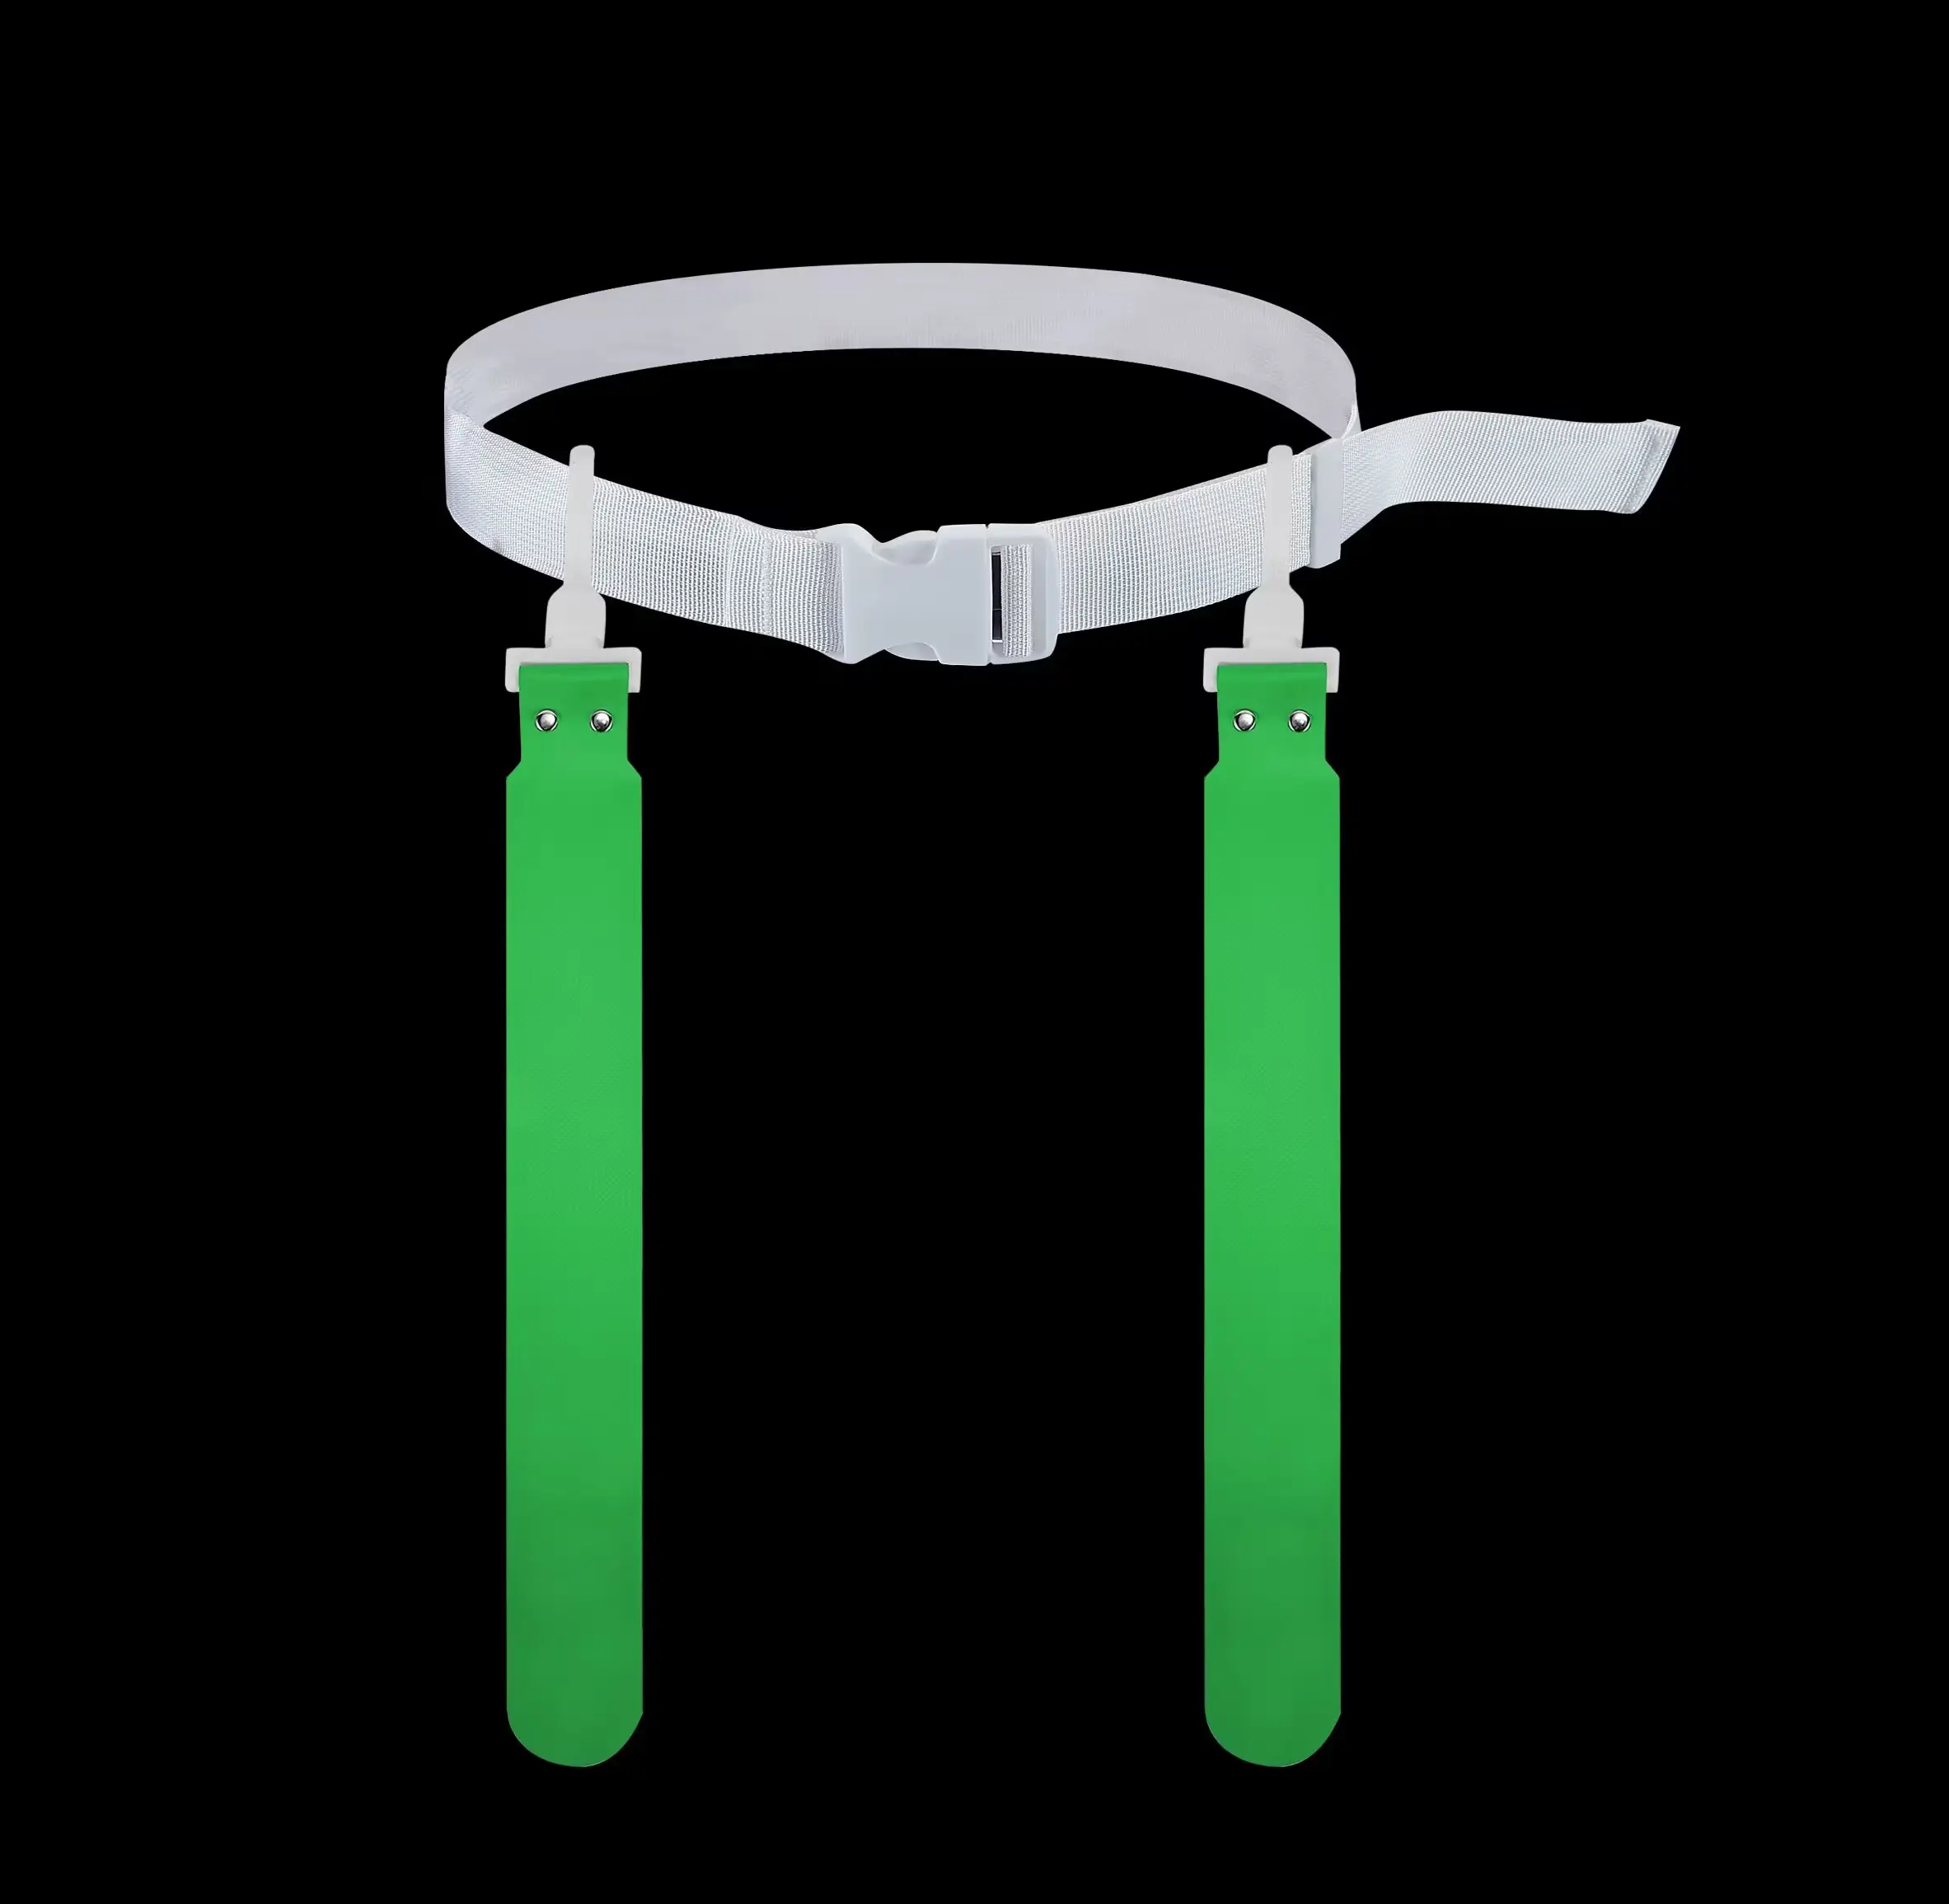 تصميم أمريكي جديد من إكسسوارات مشغلات السميكة المخصصة على شكل حزام من البولي إيثيلين لمشغلات الألعاب التي يتم تصميمها خصيصًا على شكل حزام من المطاط ذات الصمام الثنائي الباعث للضوء